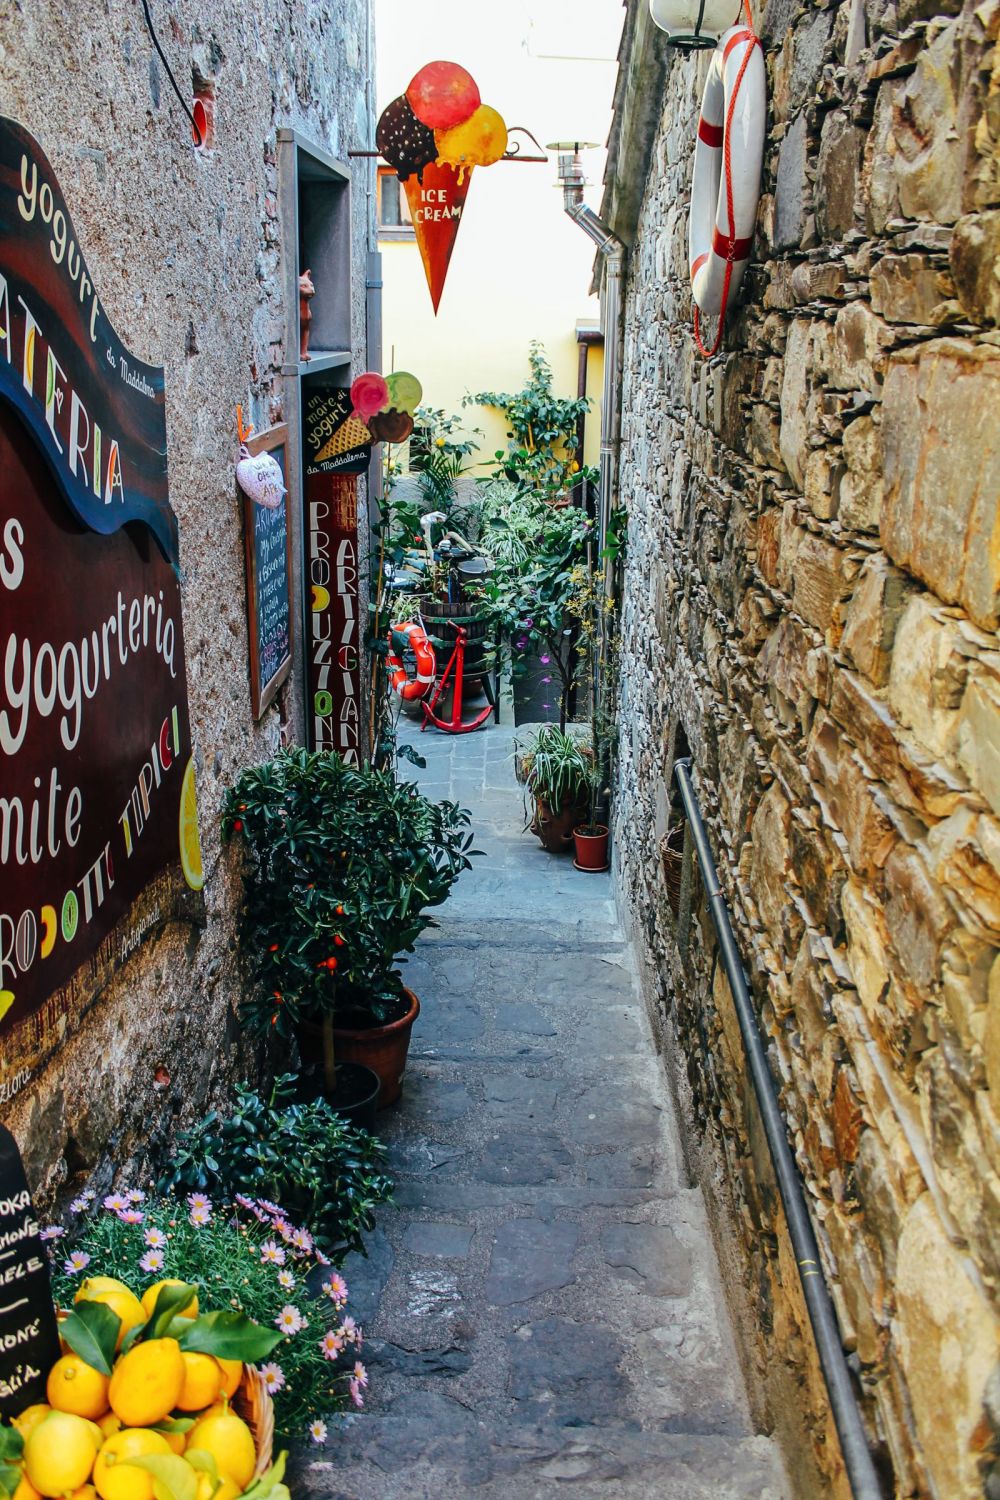 Corniglia in Cinque Terre, Italy - The Photo Diary! [3 of 5] (14)